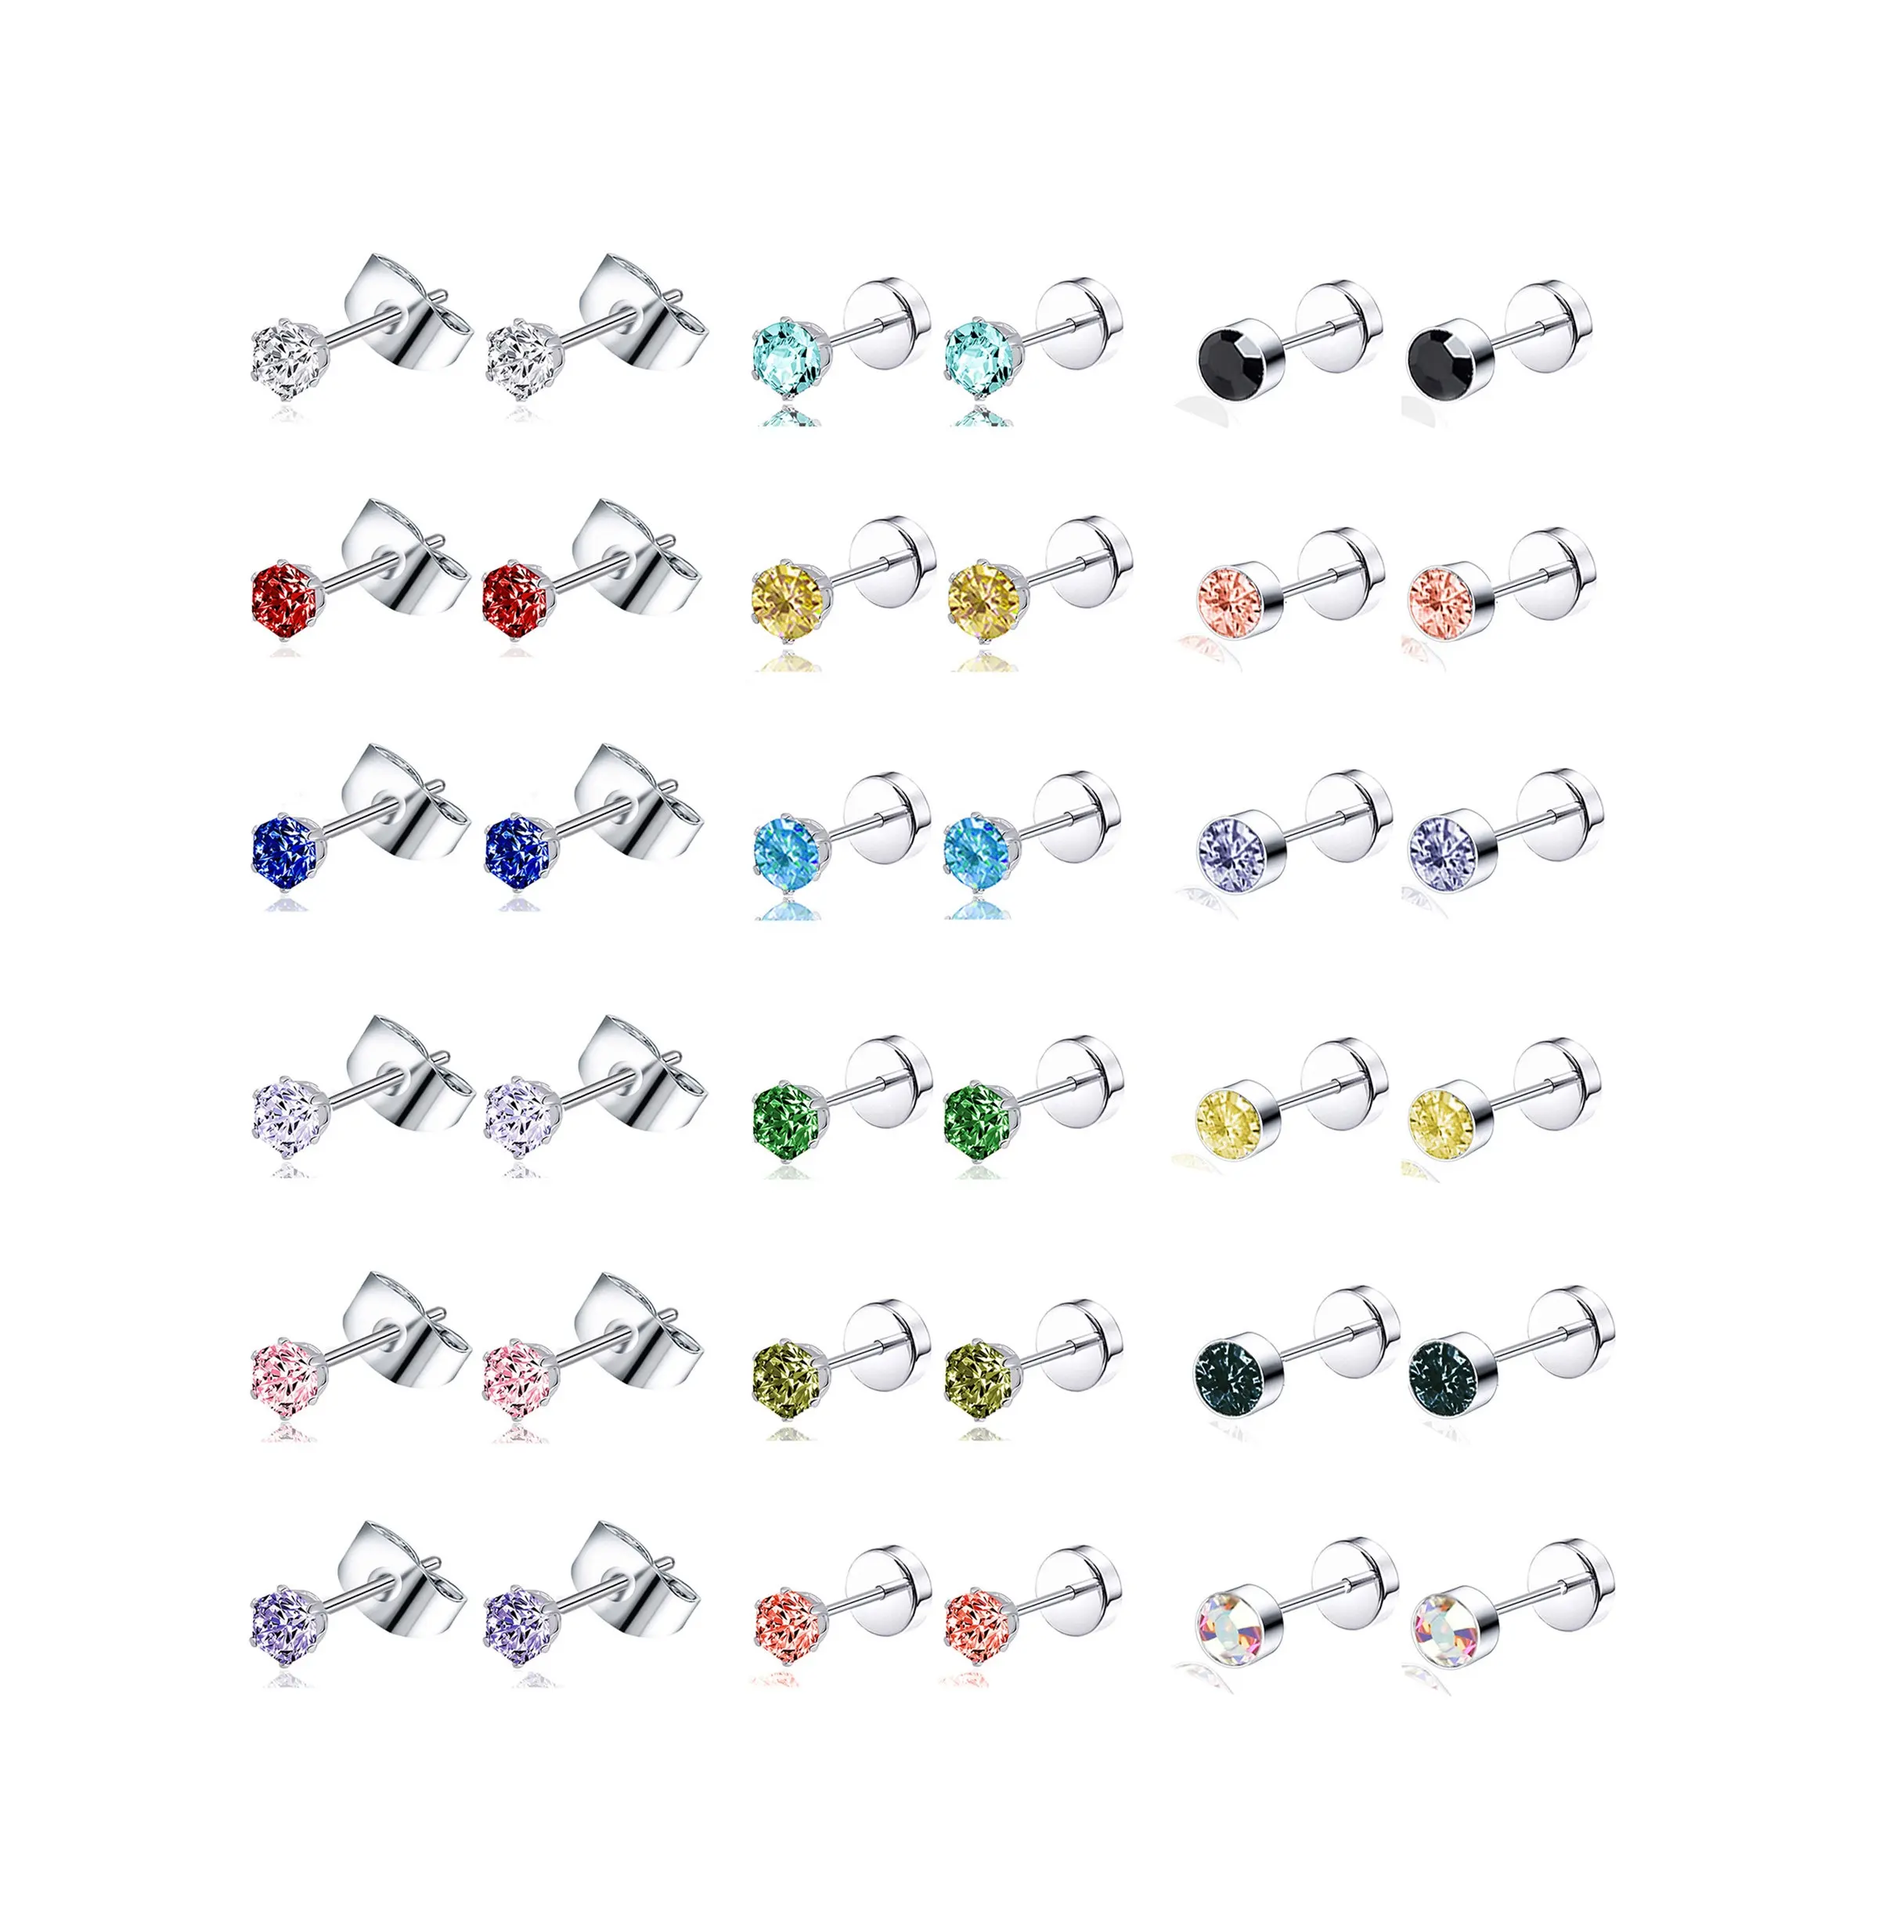 Stainless Steel Multicolor CZ Stud Earrings Set Piercing Cartilage Helix Earrings Set Screwback For Women